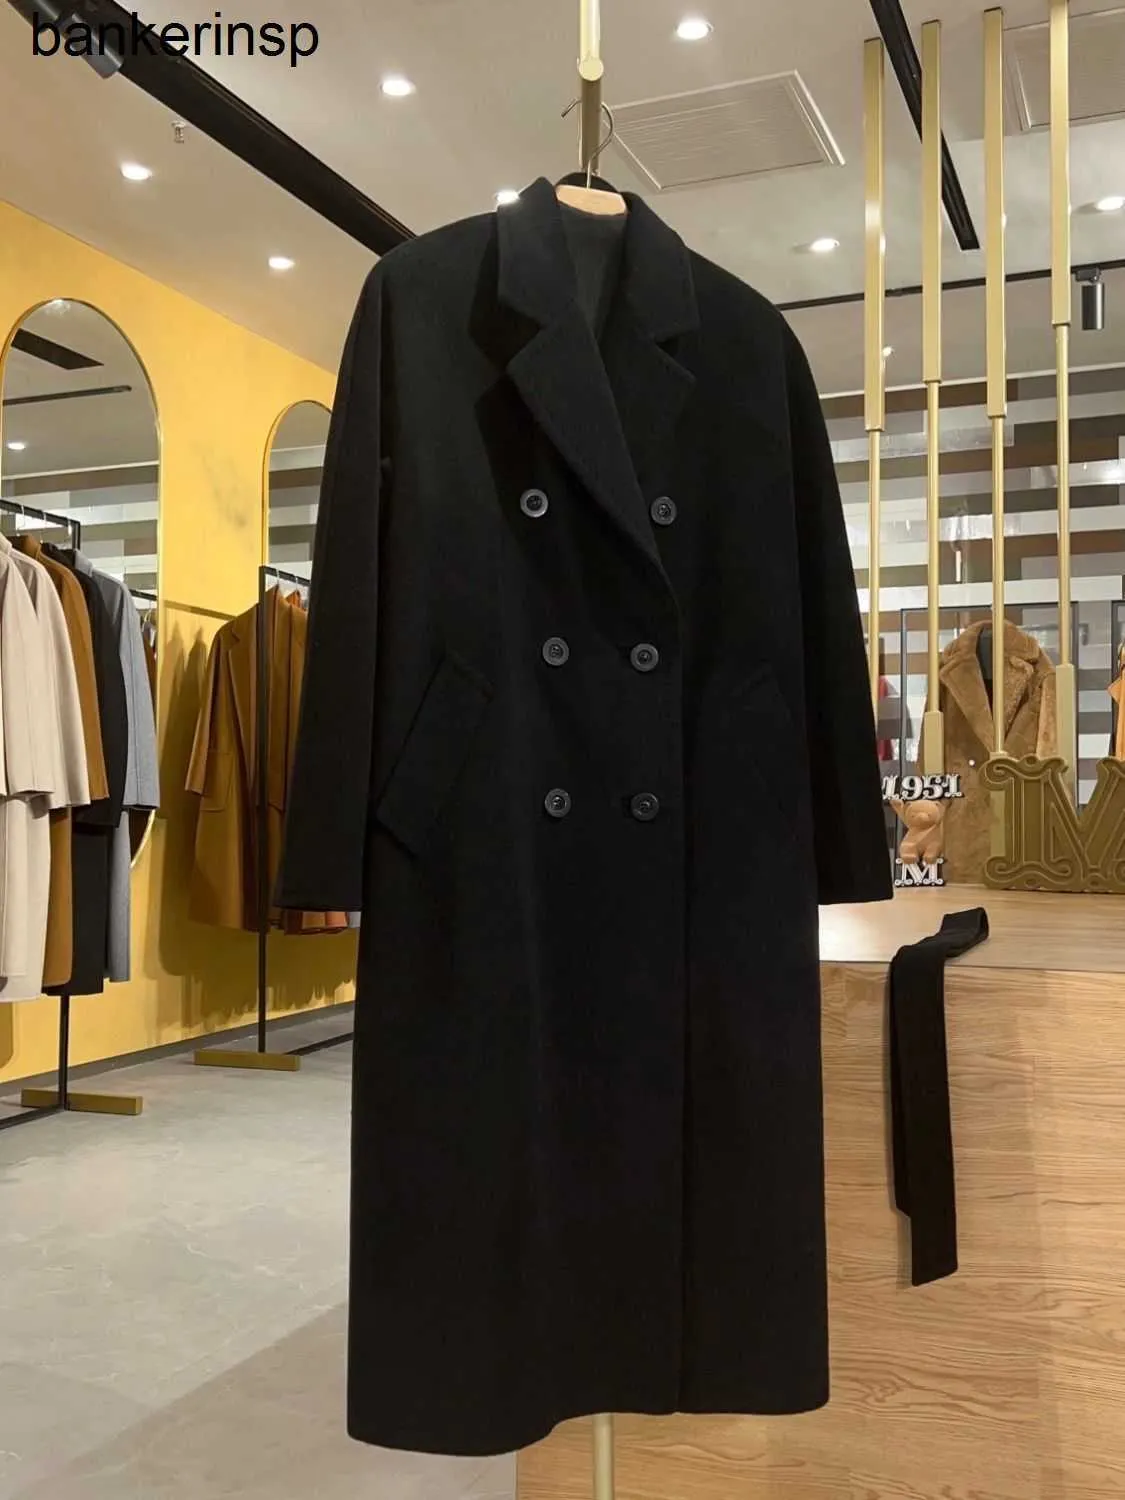 Top luksusowy płaszcz Maxmaras 101801 Pure wełniany płaszcz zimowy czarny czarny płaszcz kaszmiru dla mężczyzn i damskiej długiej końcówki